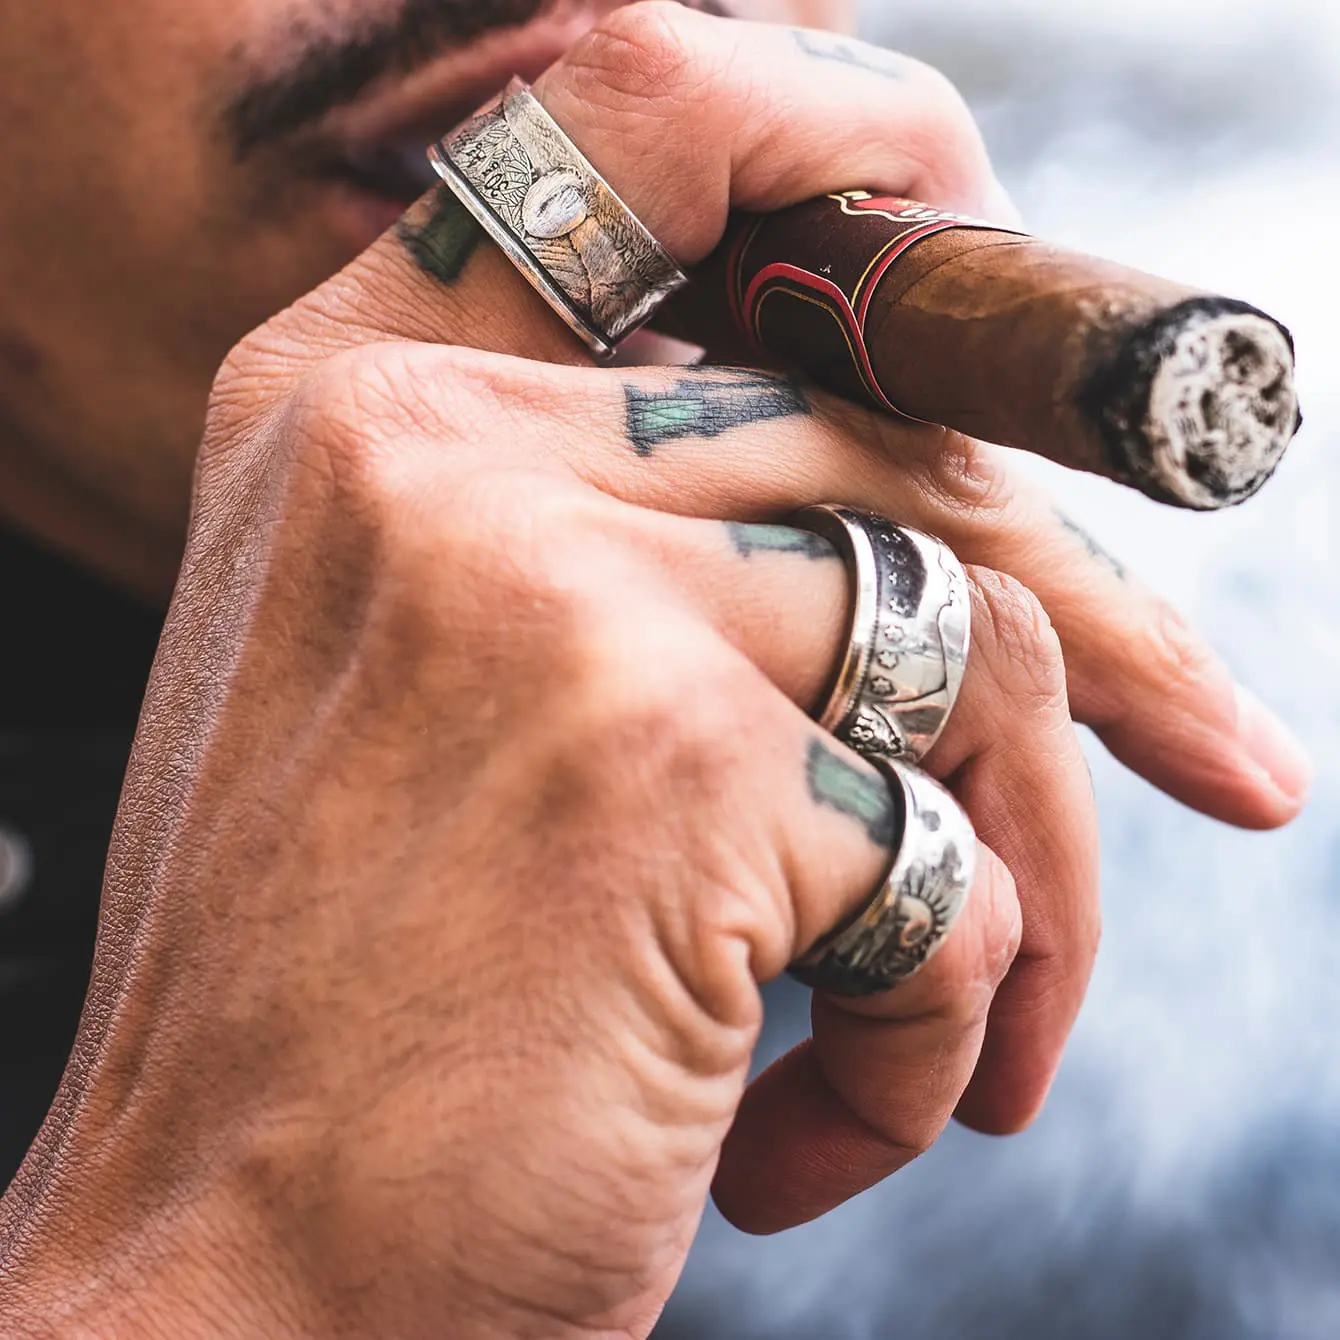 Man smoking cigar wearing multiple rings